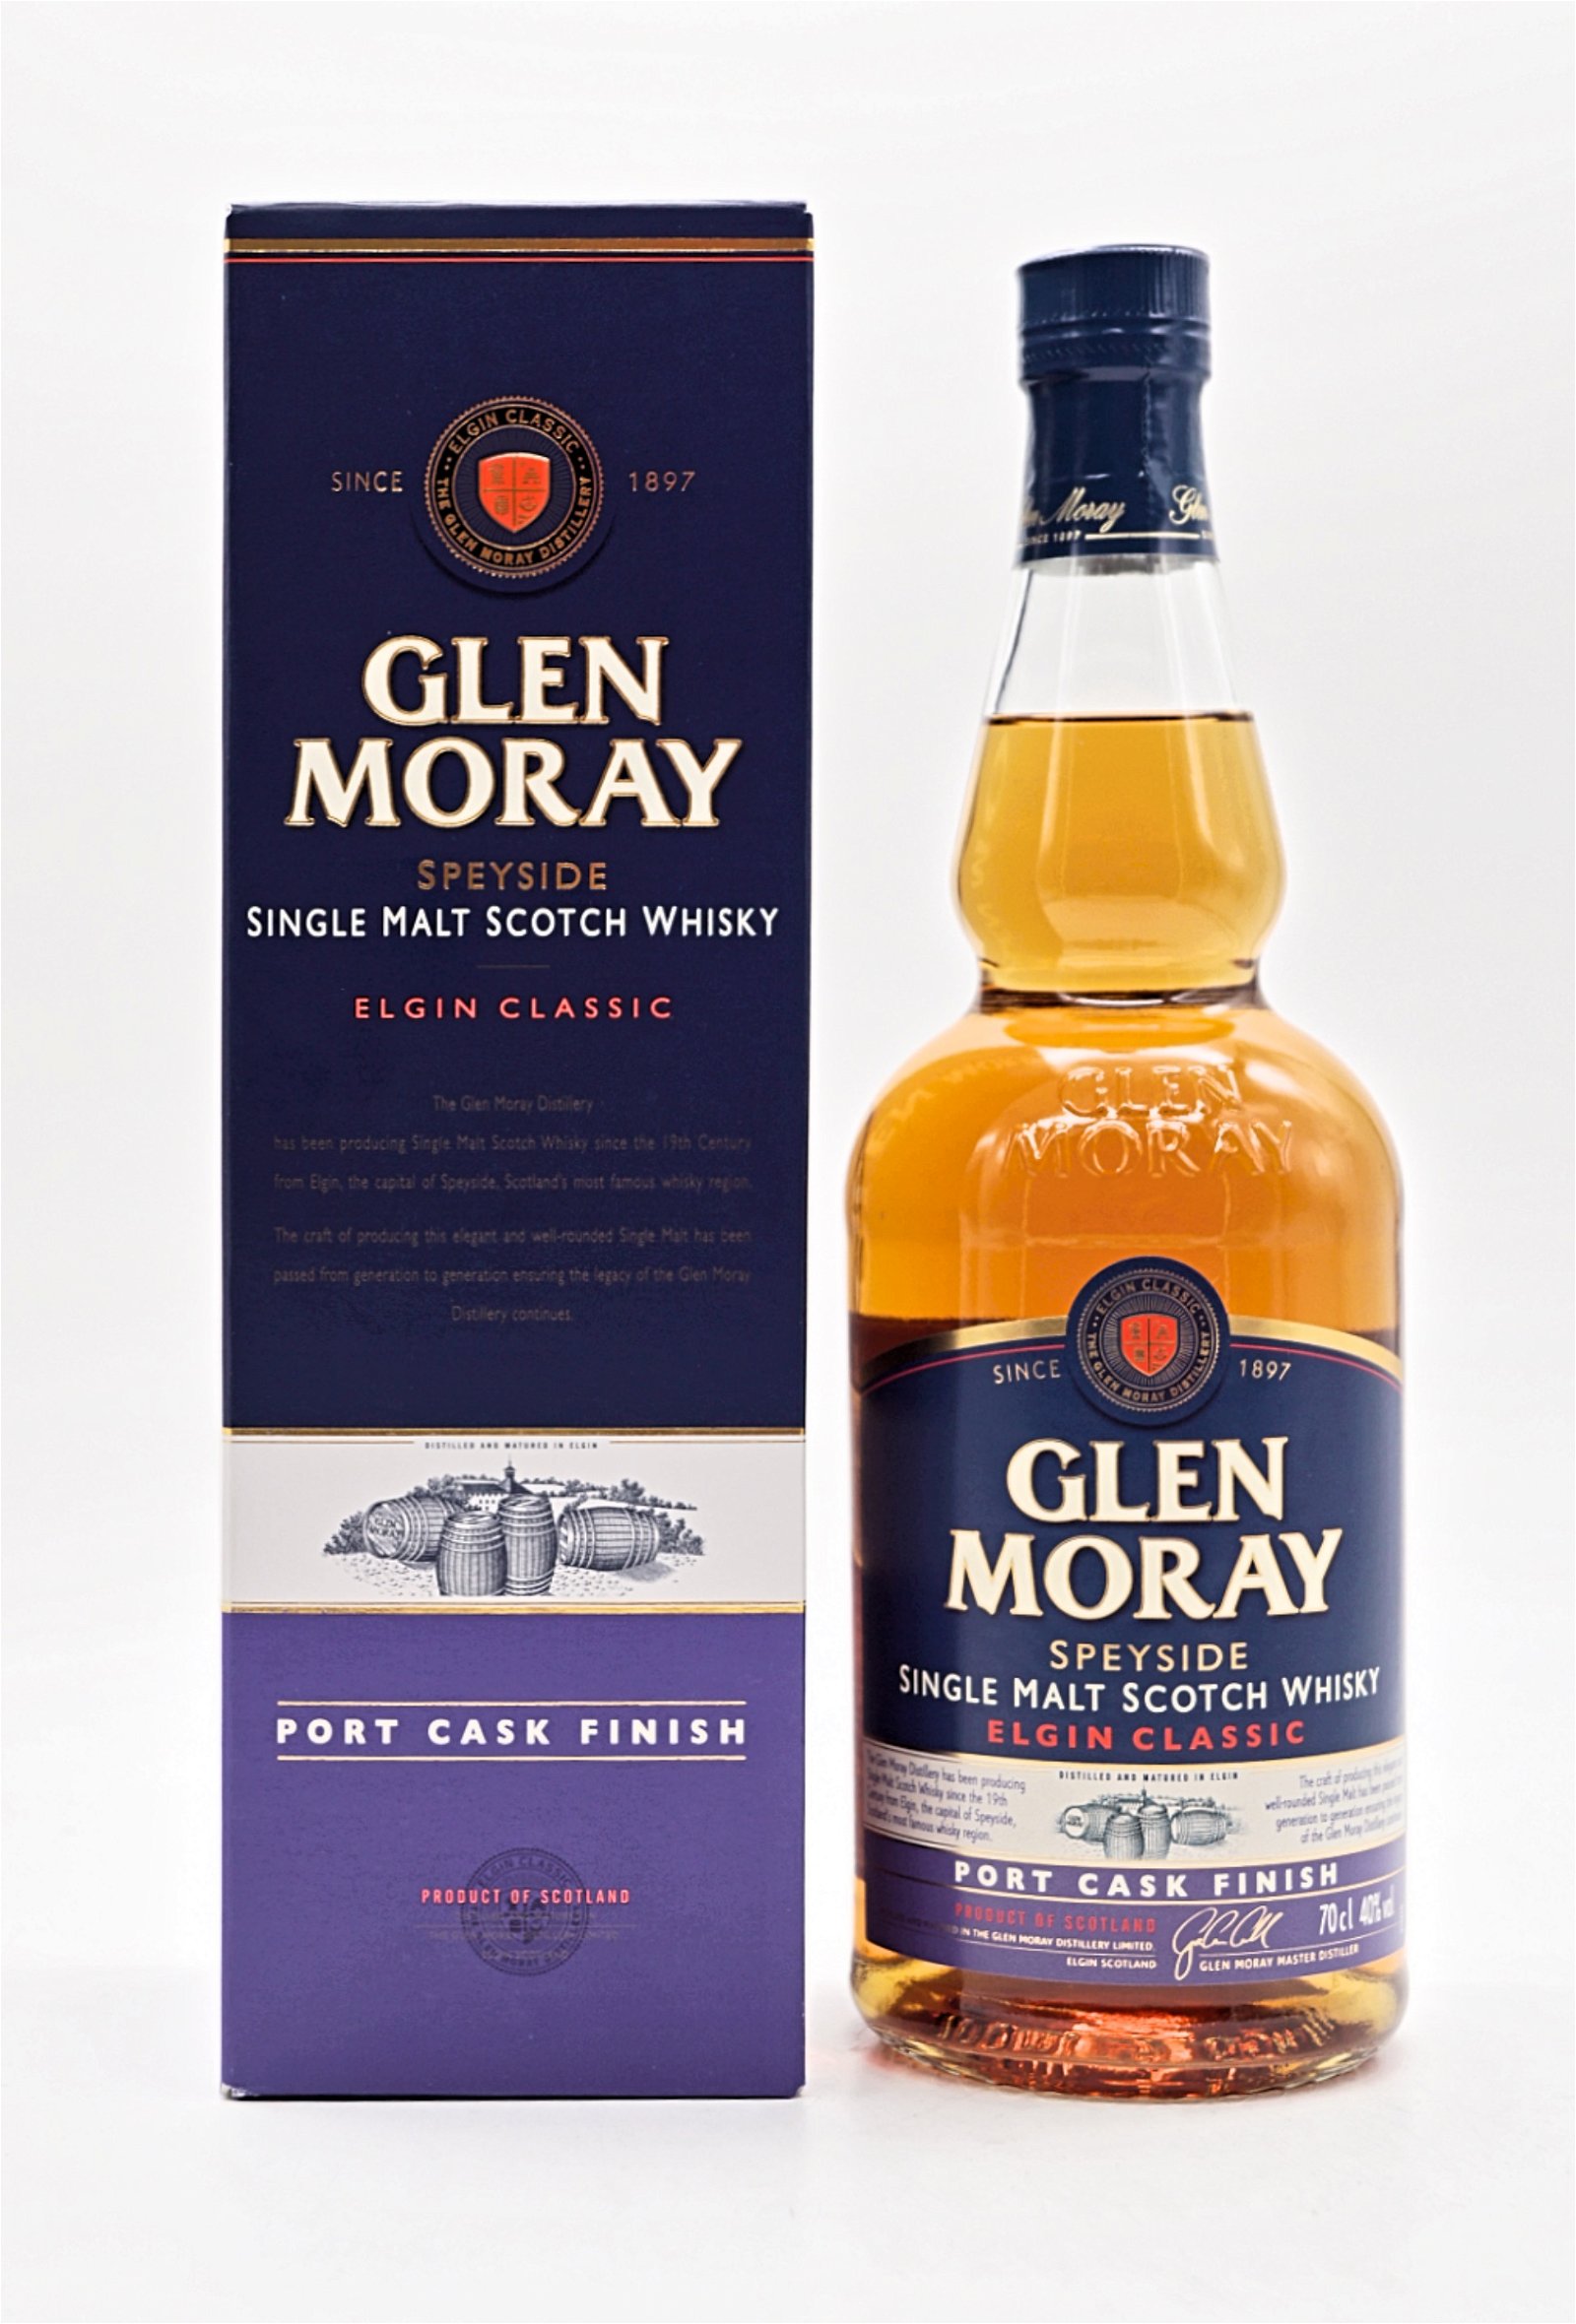 Glen Moray Elgin Classic Port Cask Finish Single Malt Scotch Whisky